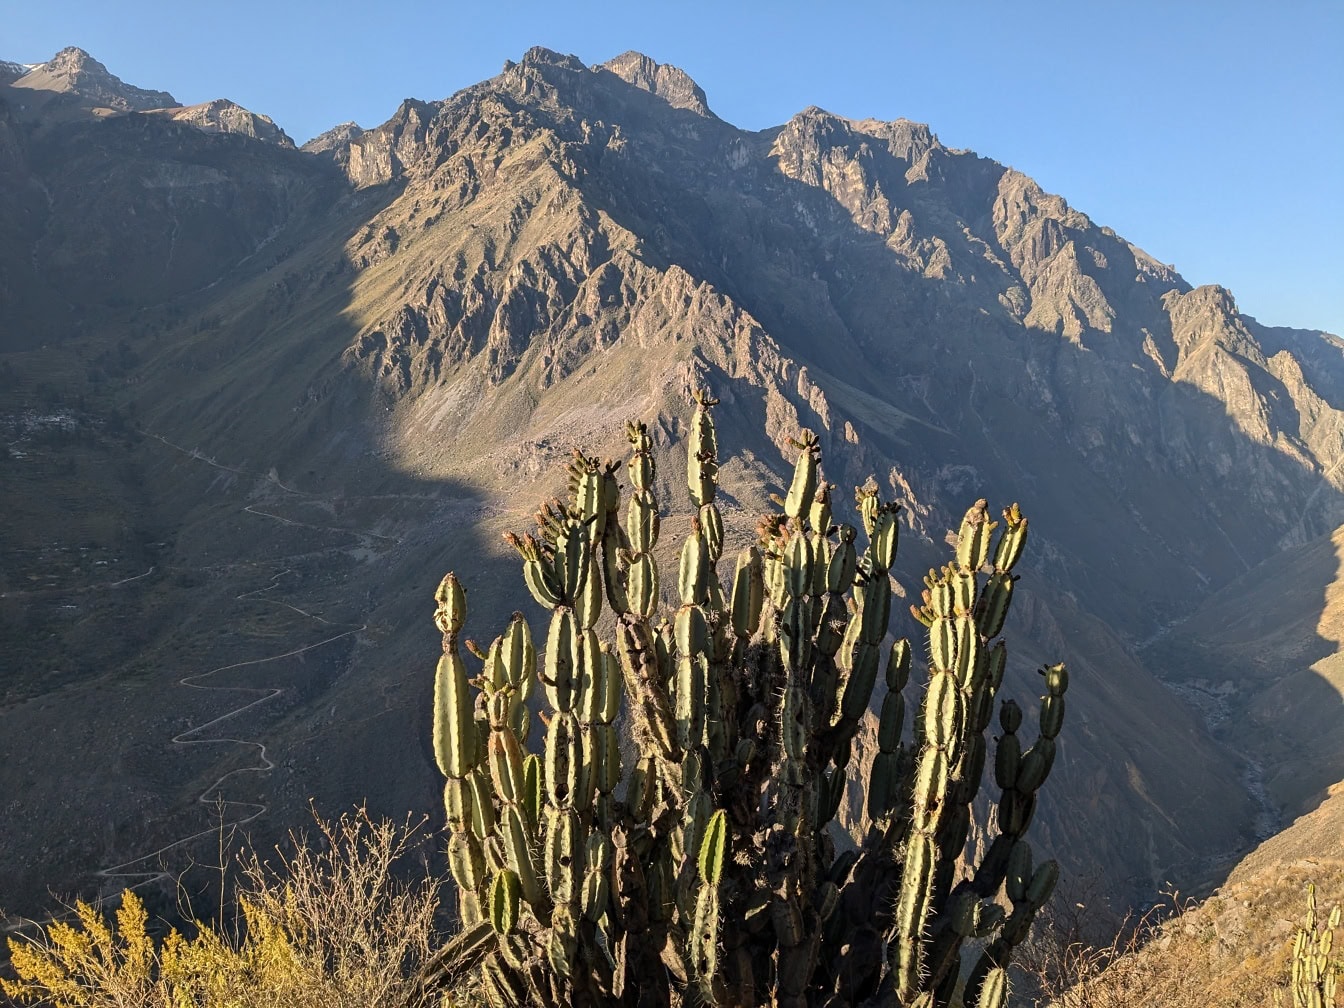 En kaktus som kallas den peruanska äppelkaktusen (Cereus repandus) framför ett berg vid Colca-kanjonen i Peru